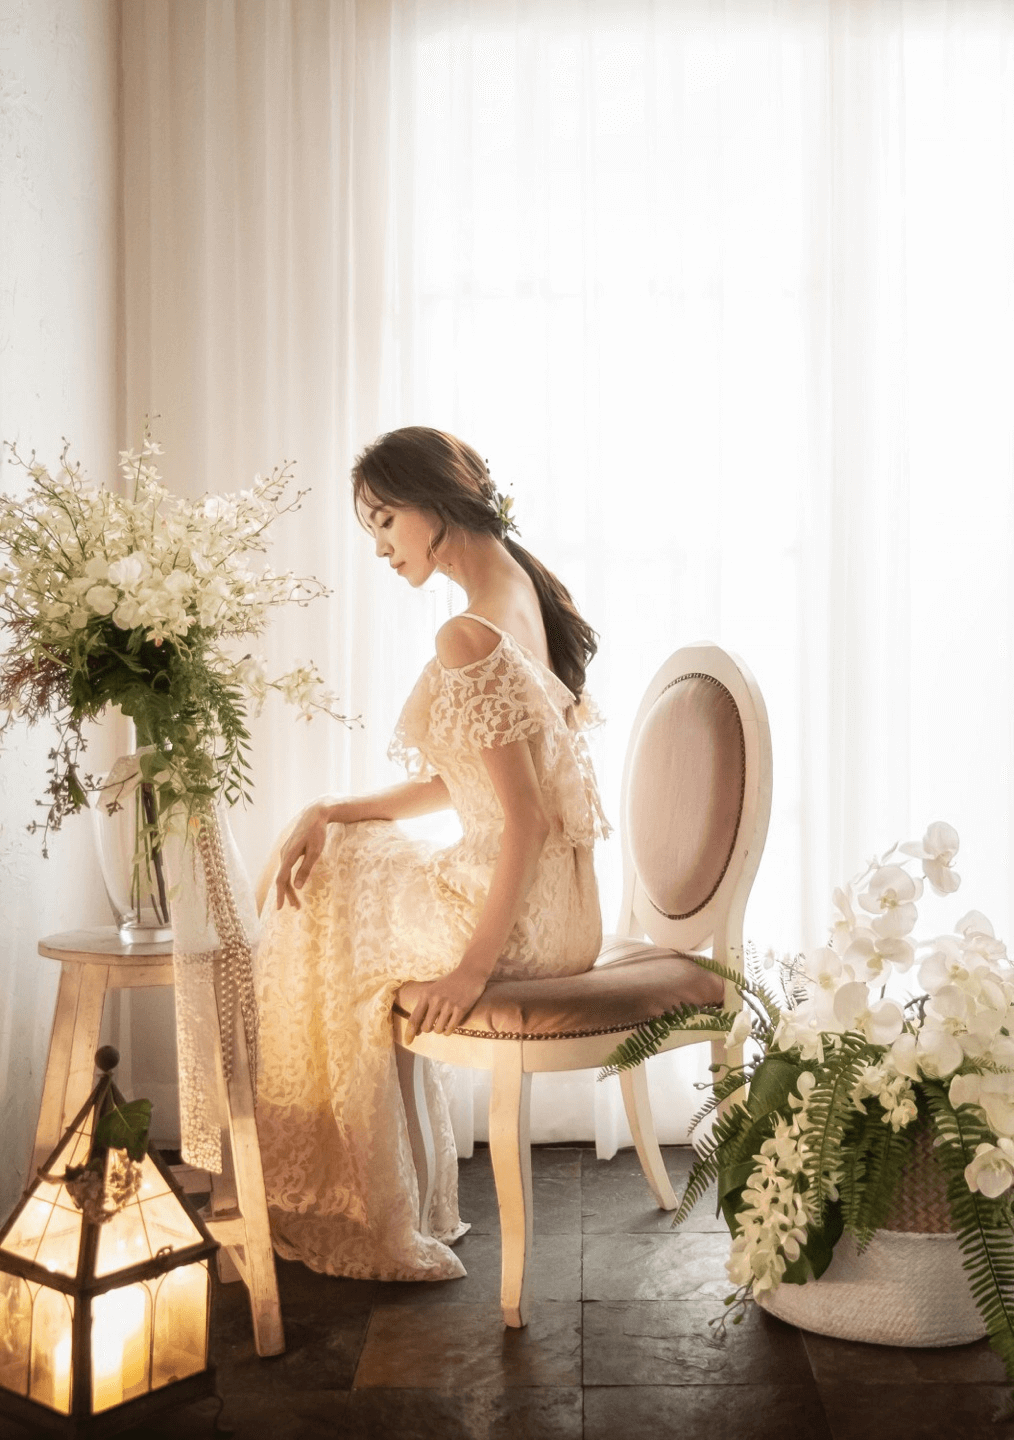 Chụp ảnh cưới theo phong cách Hàn Quốc là các chi tiết ảnh đều mang vẻ đẹp của sự nhẹ nhàng, tinh tế (Ảnh sưu tầm)